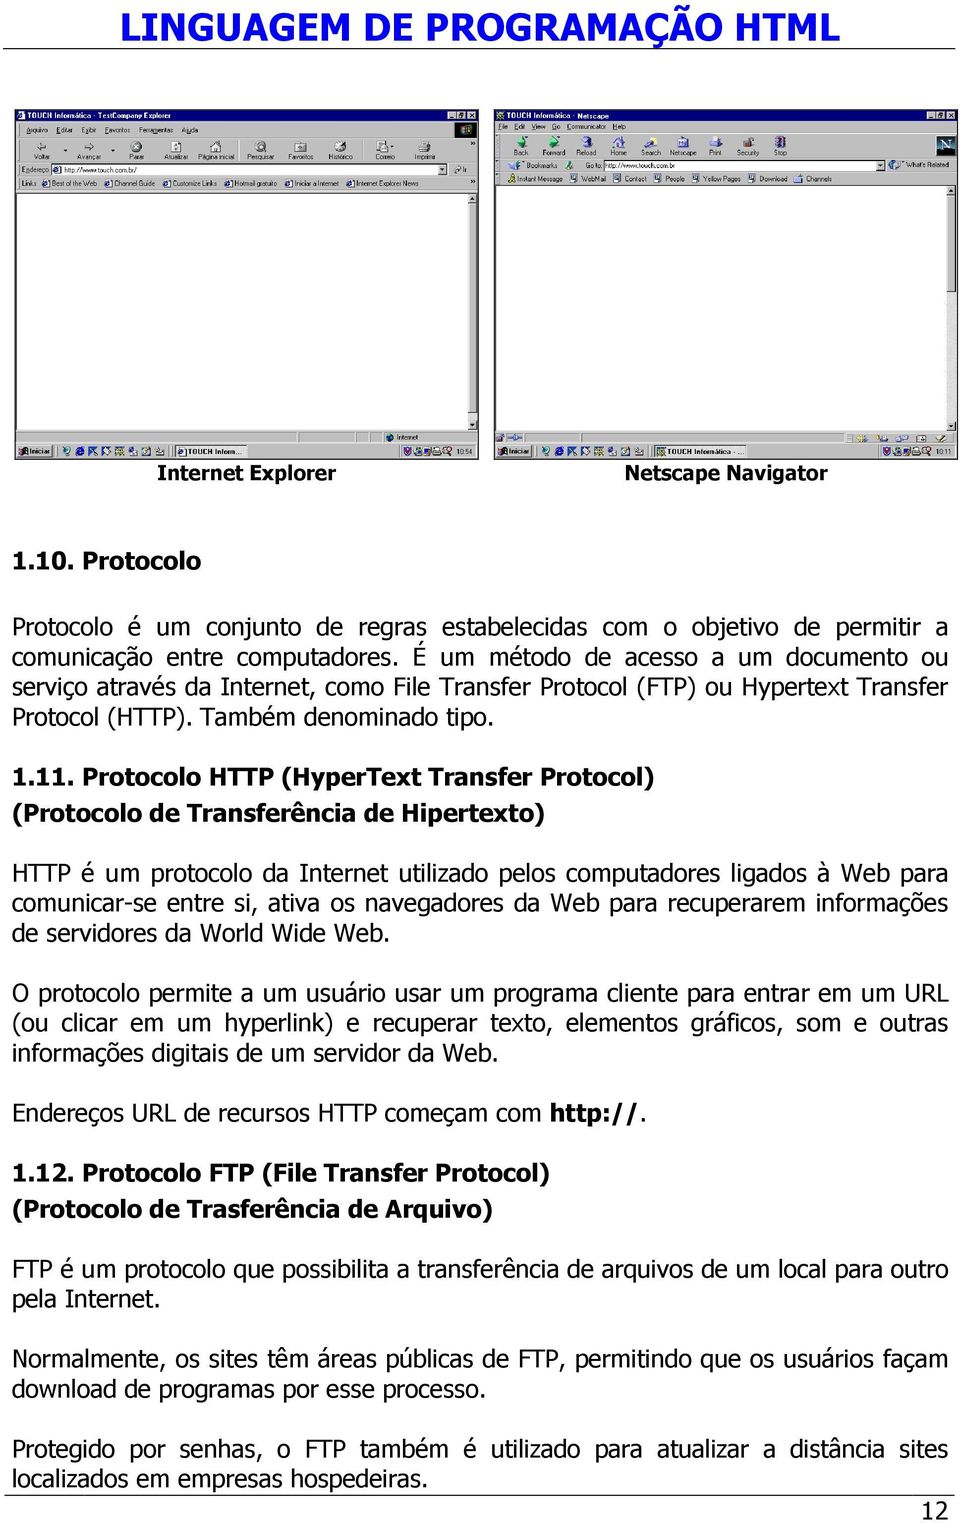 Protocolo HTTP (HyperText Transfer Protocol) (Protocolo de Transferência de Hipertexto) HTTP é um protocolo da Internet utilizado pelos computadores ligados à Web para comunicar-se entre si, ativa os